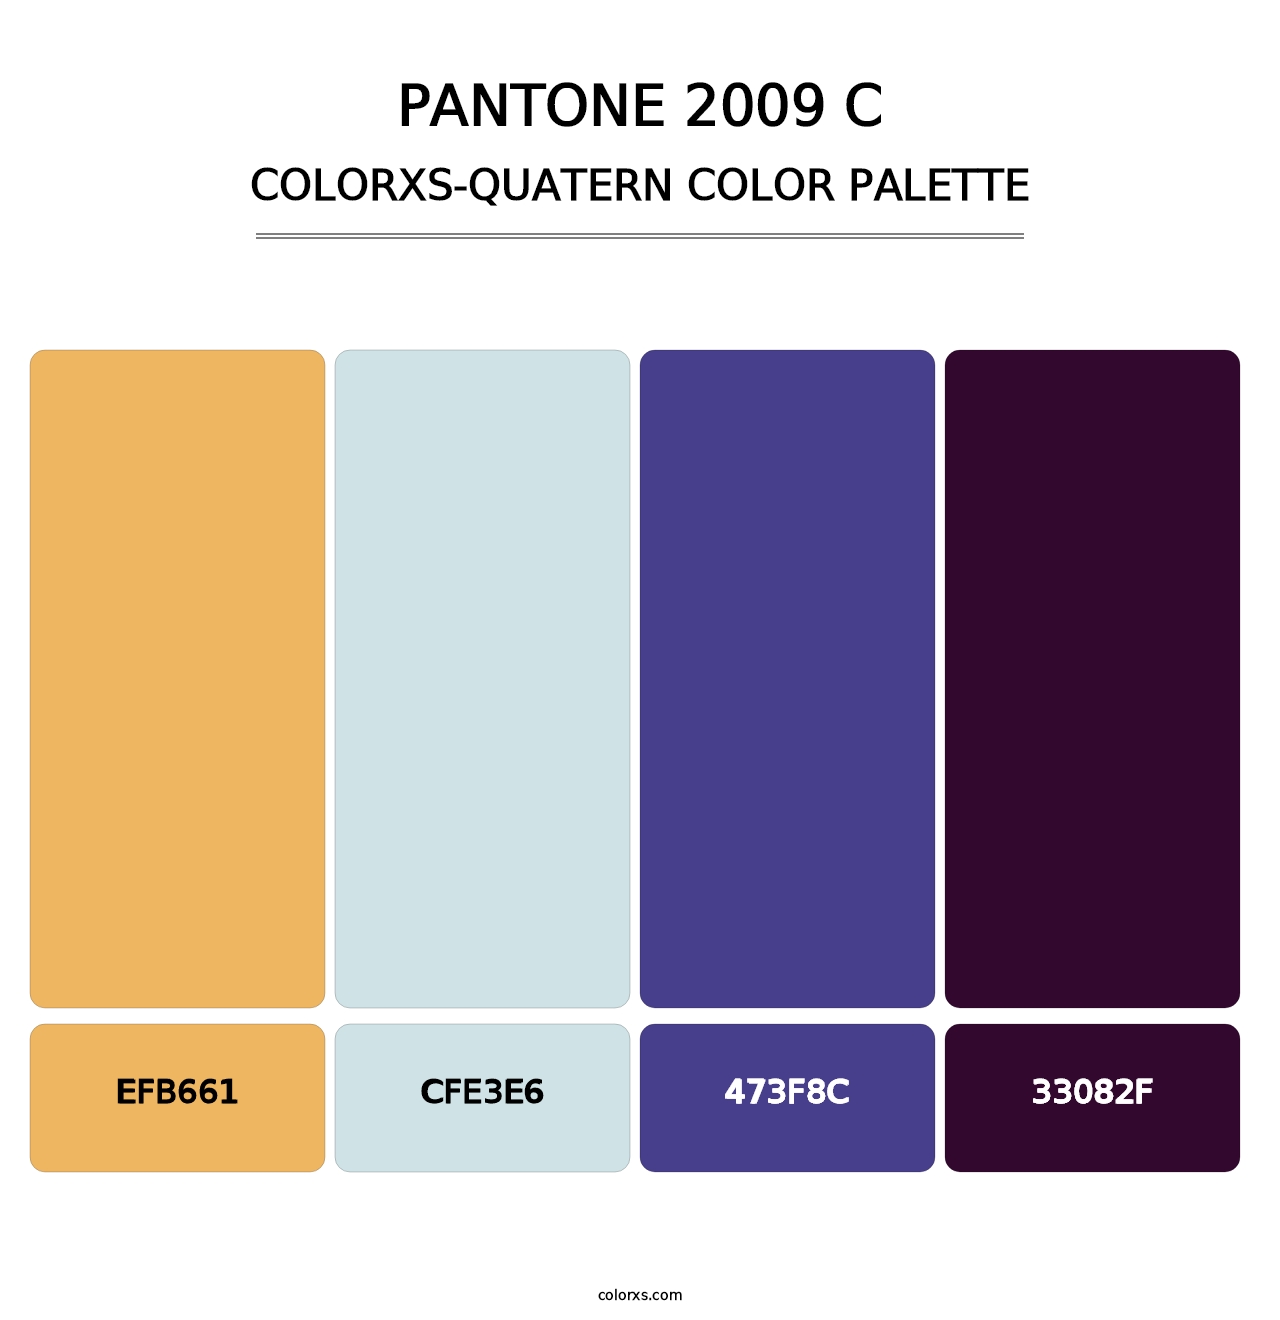 PANTONE 2009 C - Colorxs Quatern Palette